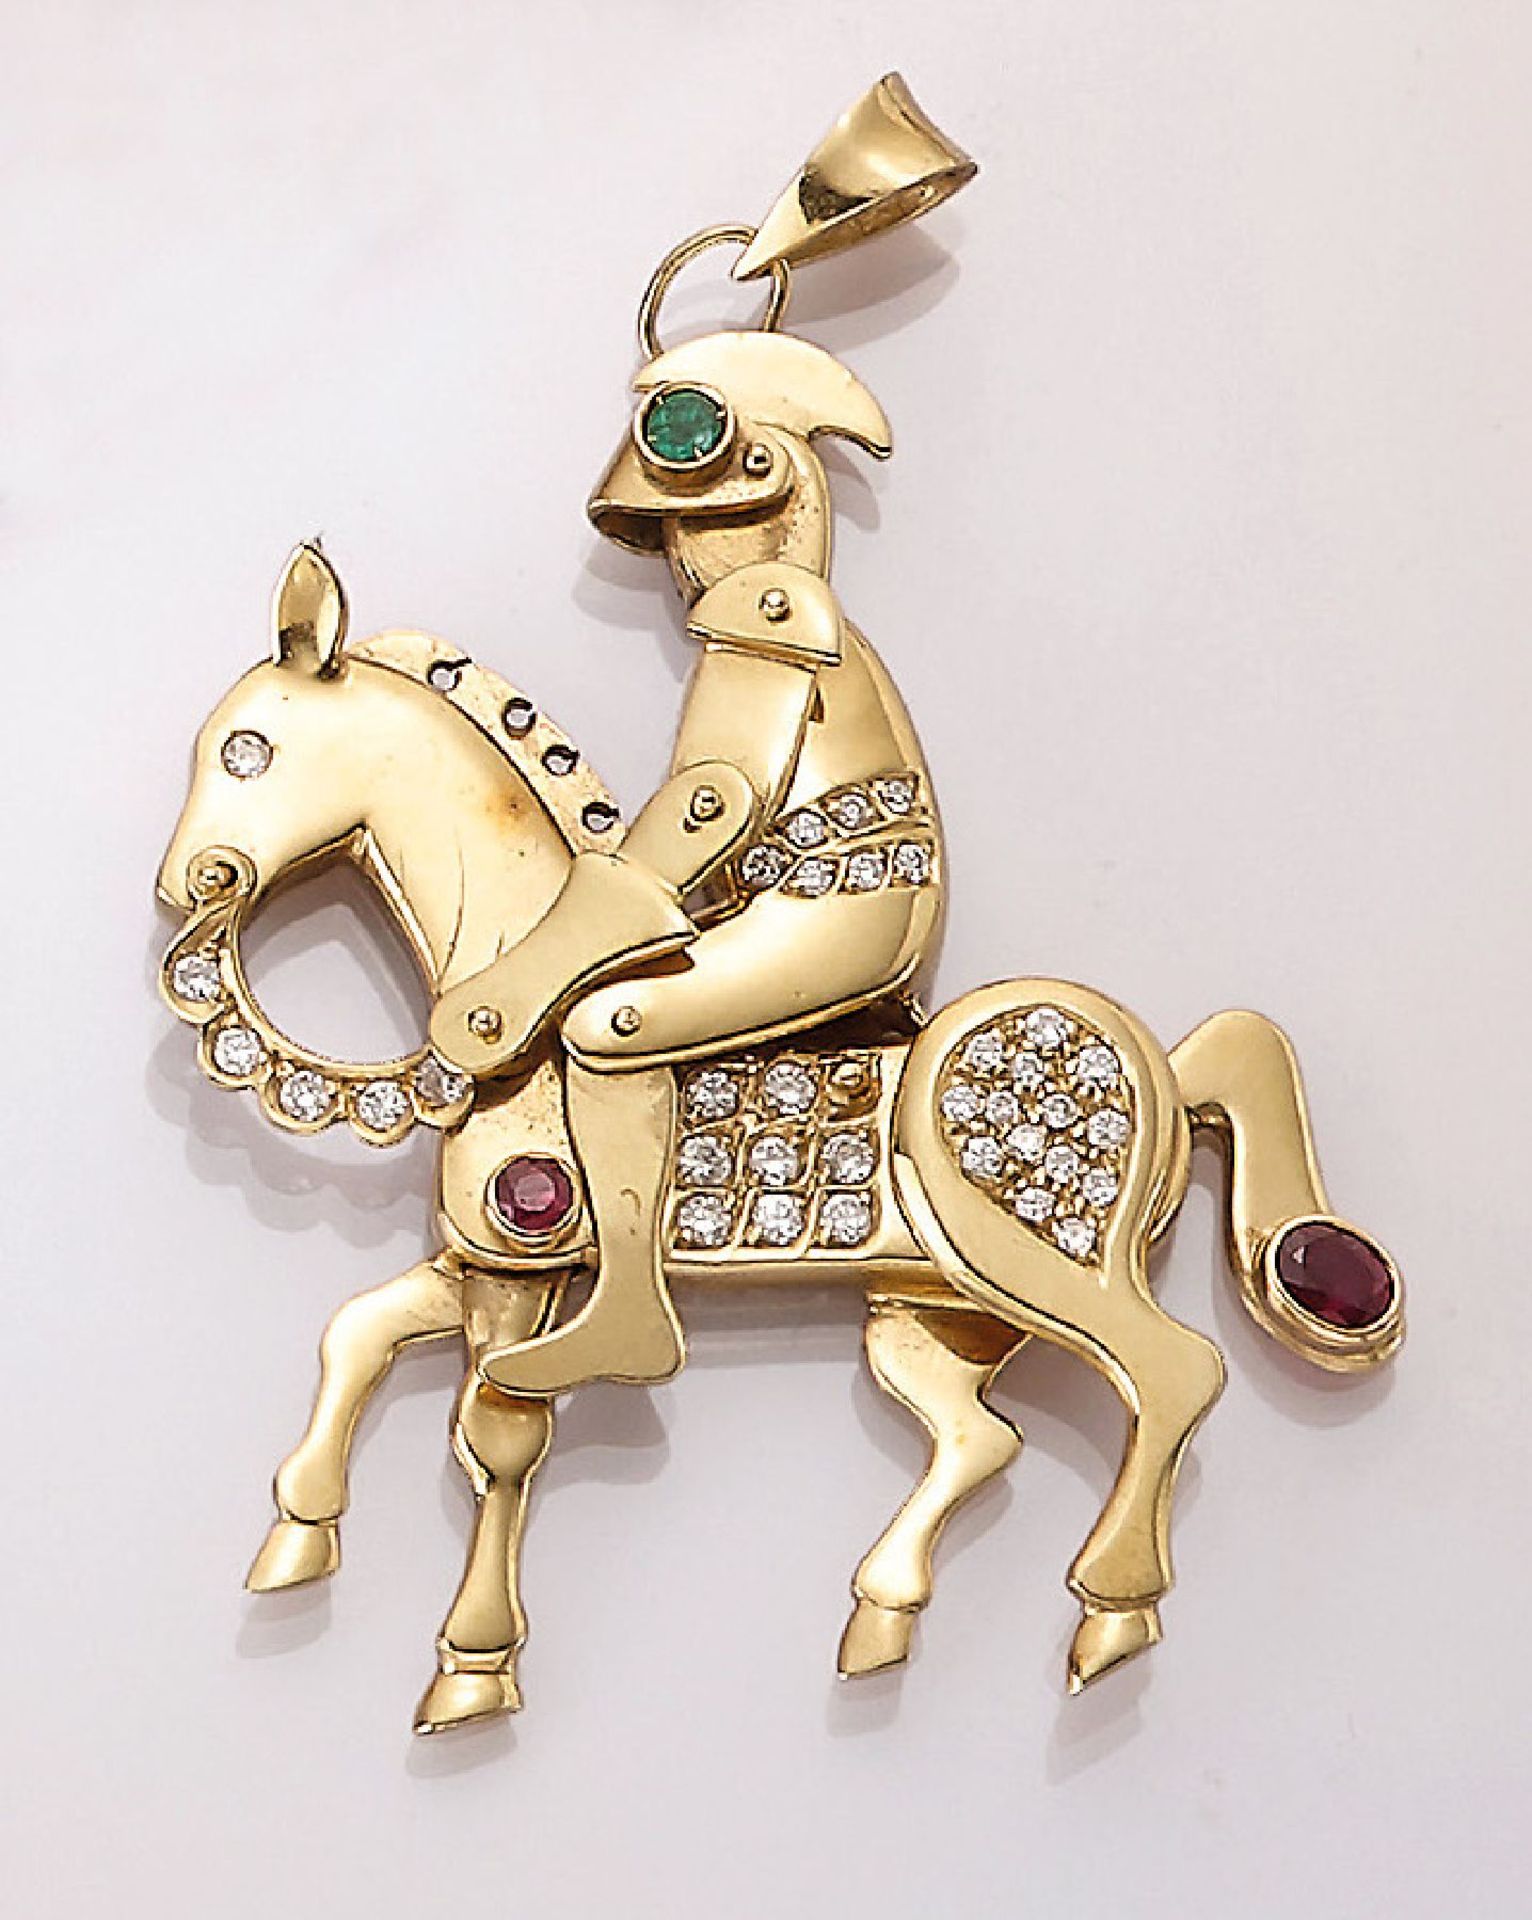 18 kt Gold Anhänger "Ritter auf Pferd" mit Brillanten und Farbsteinen, GG 750/000, Pferd und